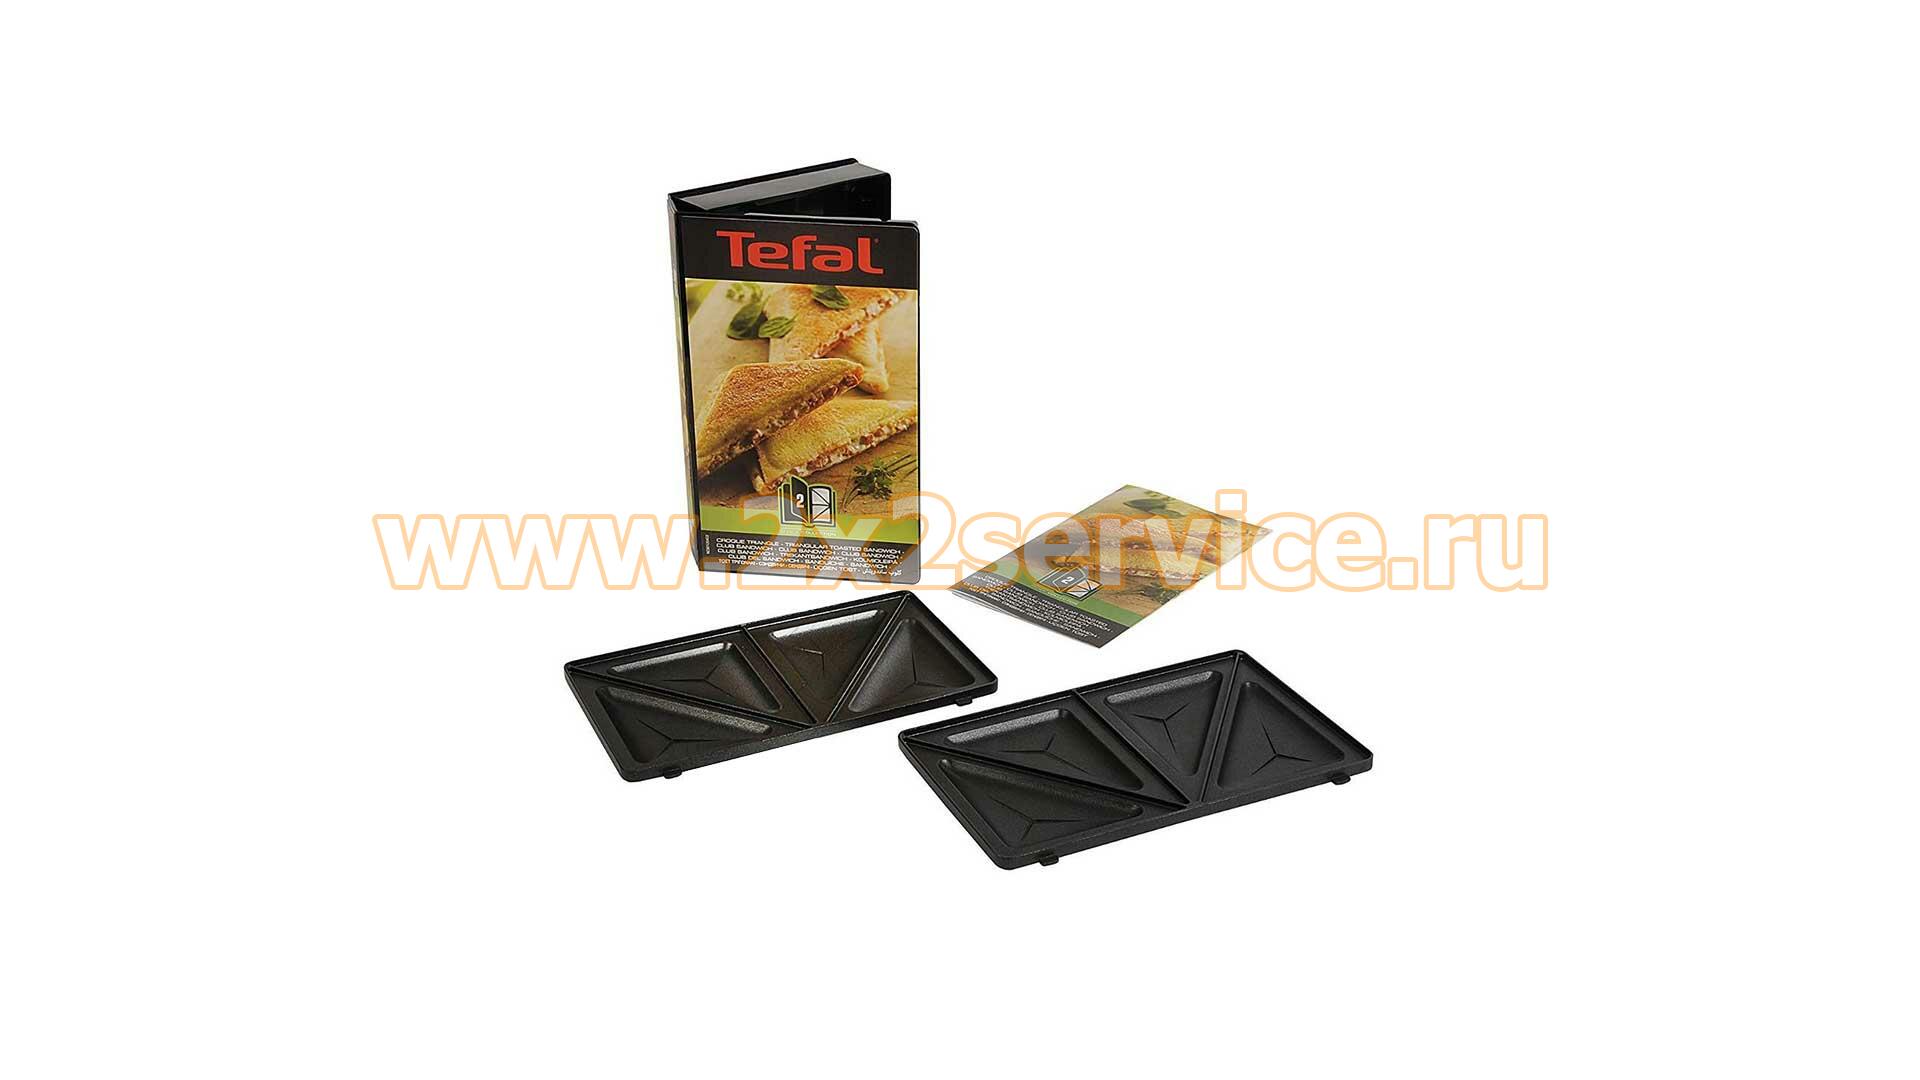 Съемная панель вафельницы (сэндвичницы) Tefal XA800212